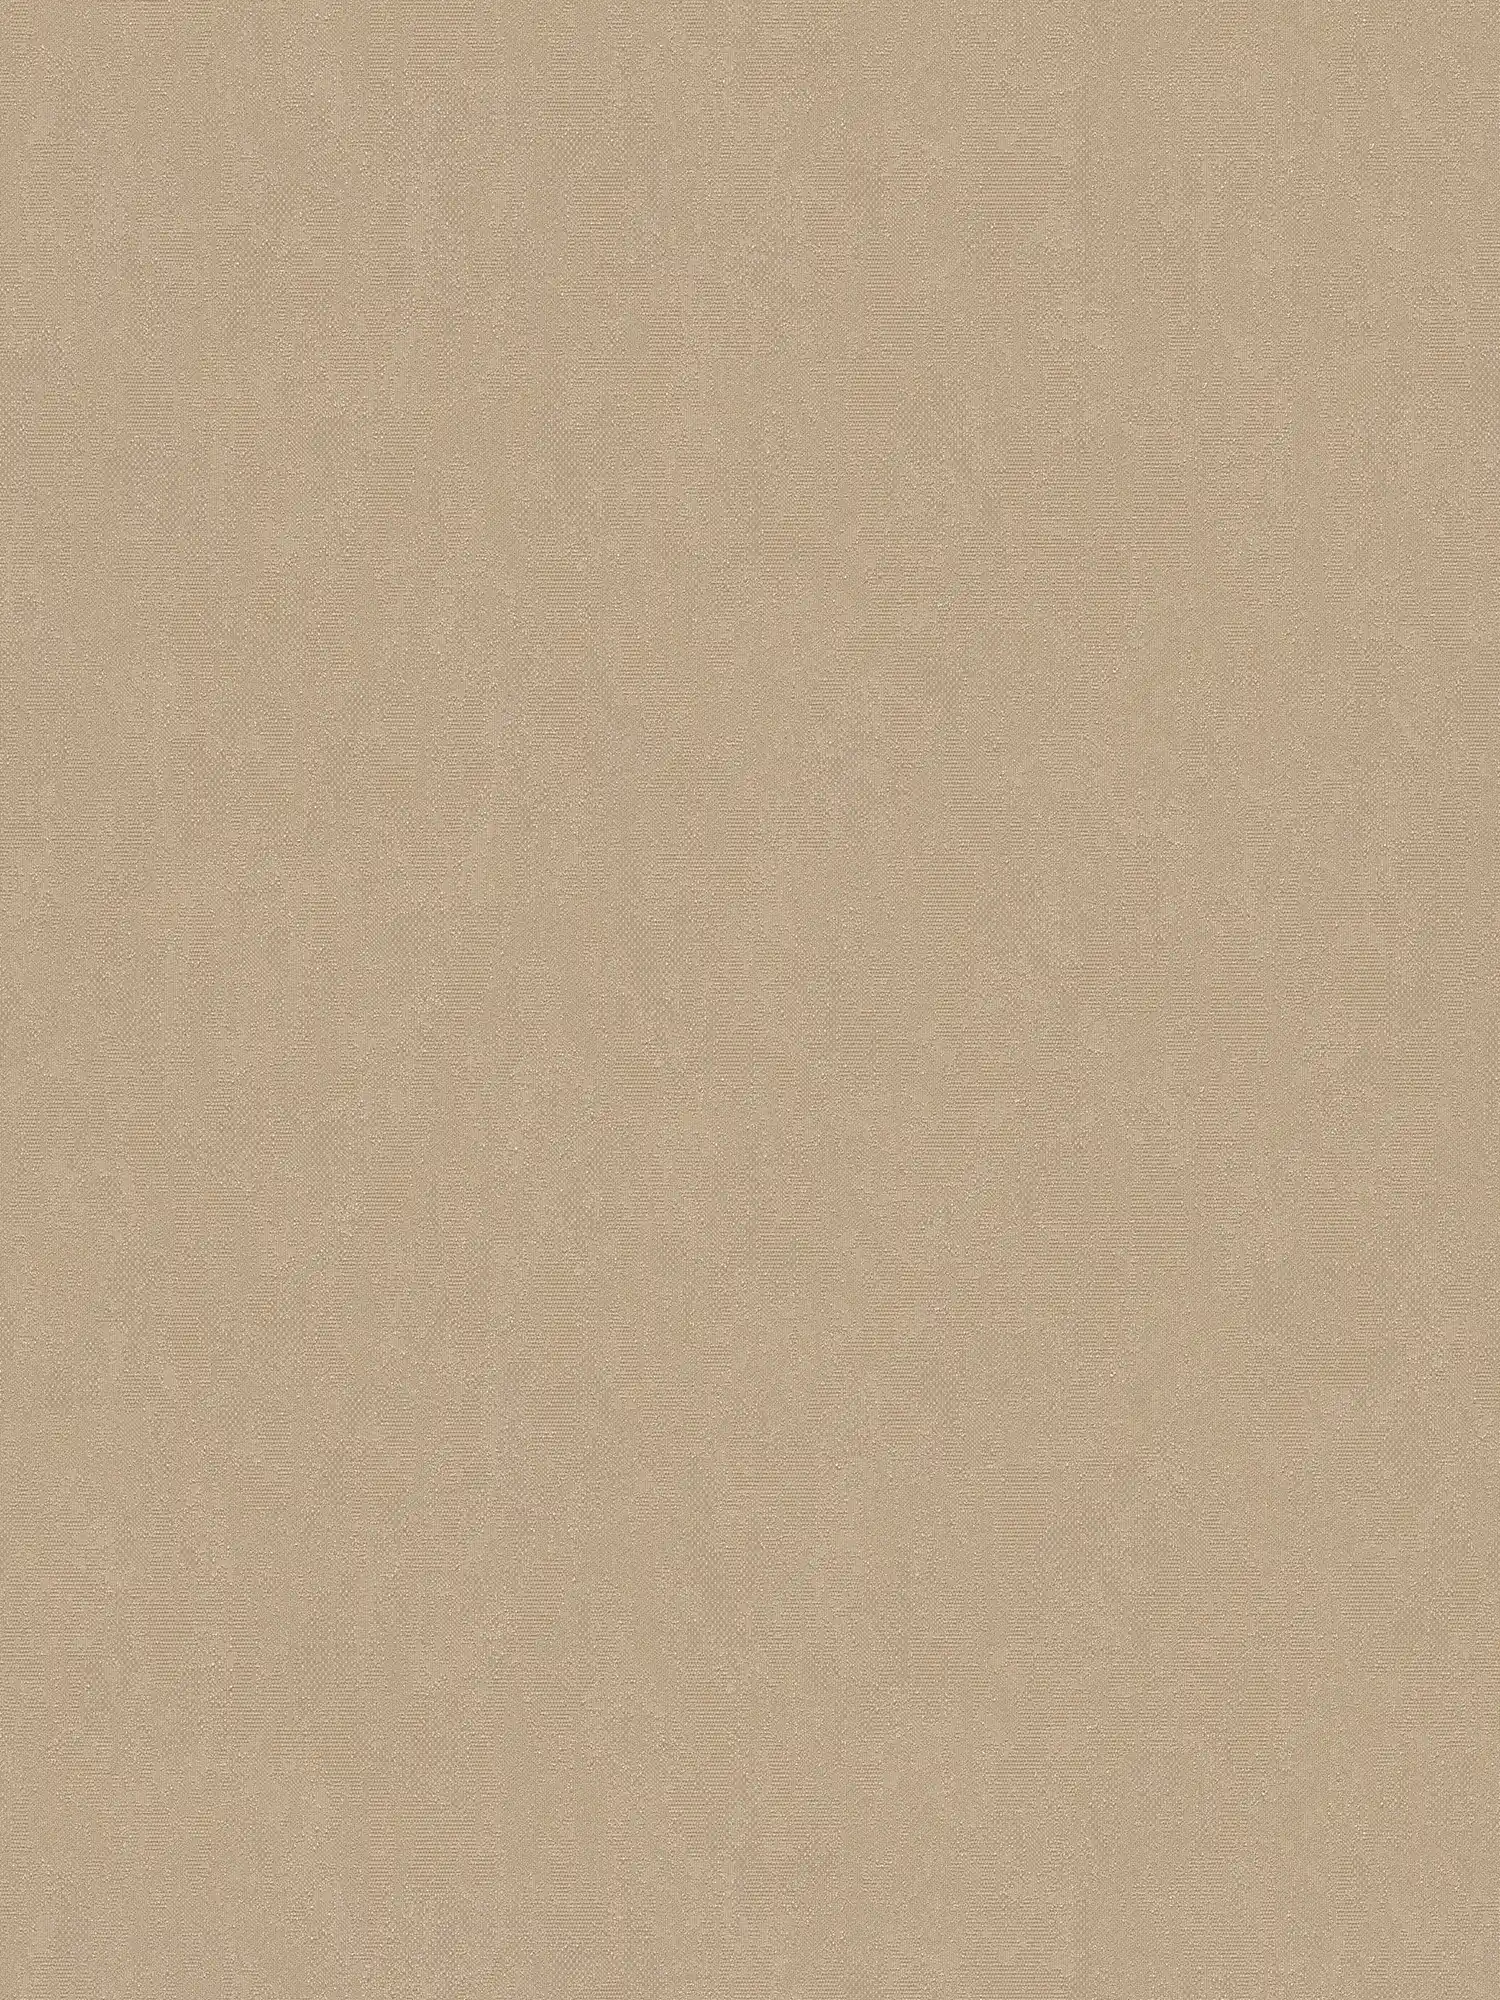 Carta da parati in tessuto non tessuto grigio-beige con disegno strutturato e finitura satinata
